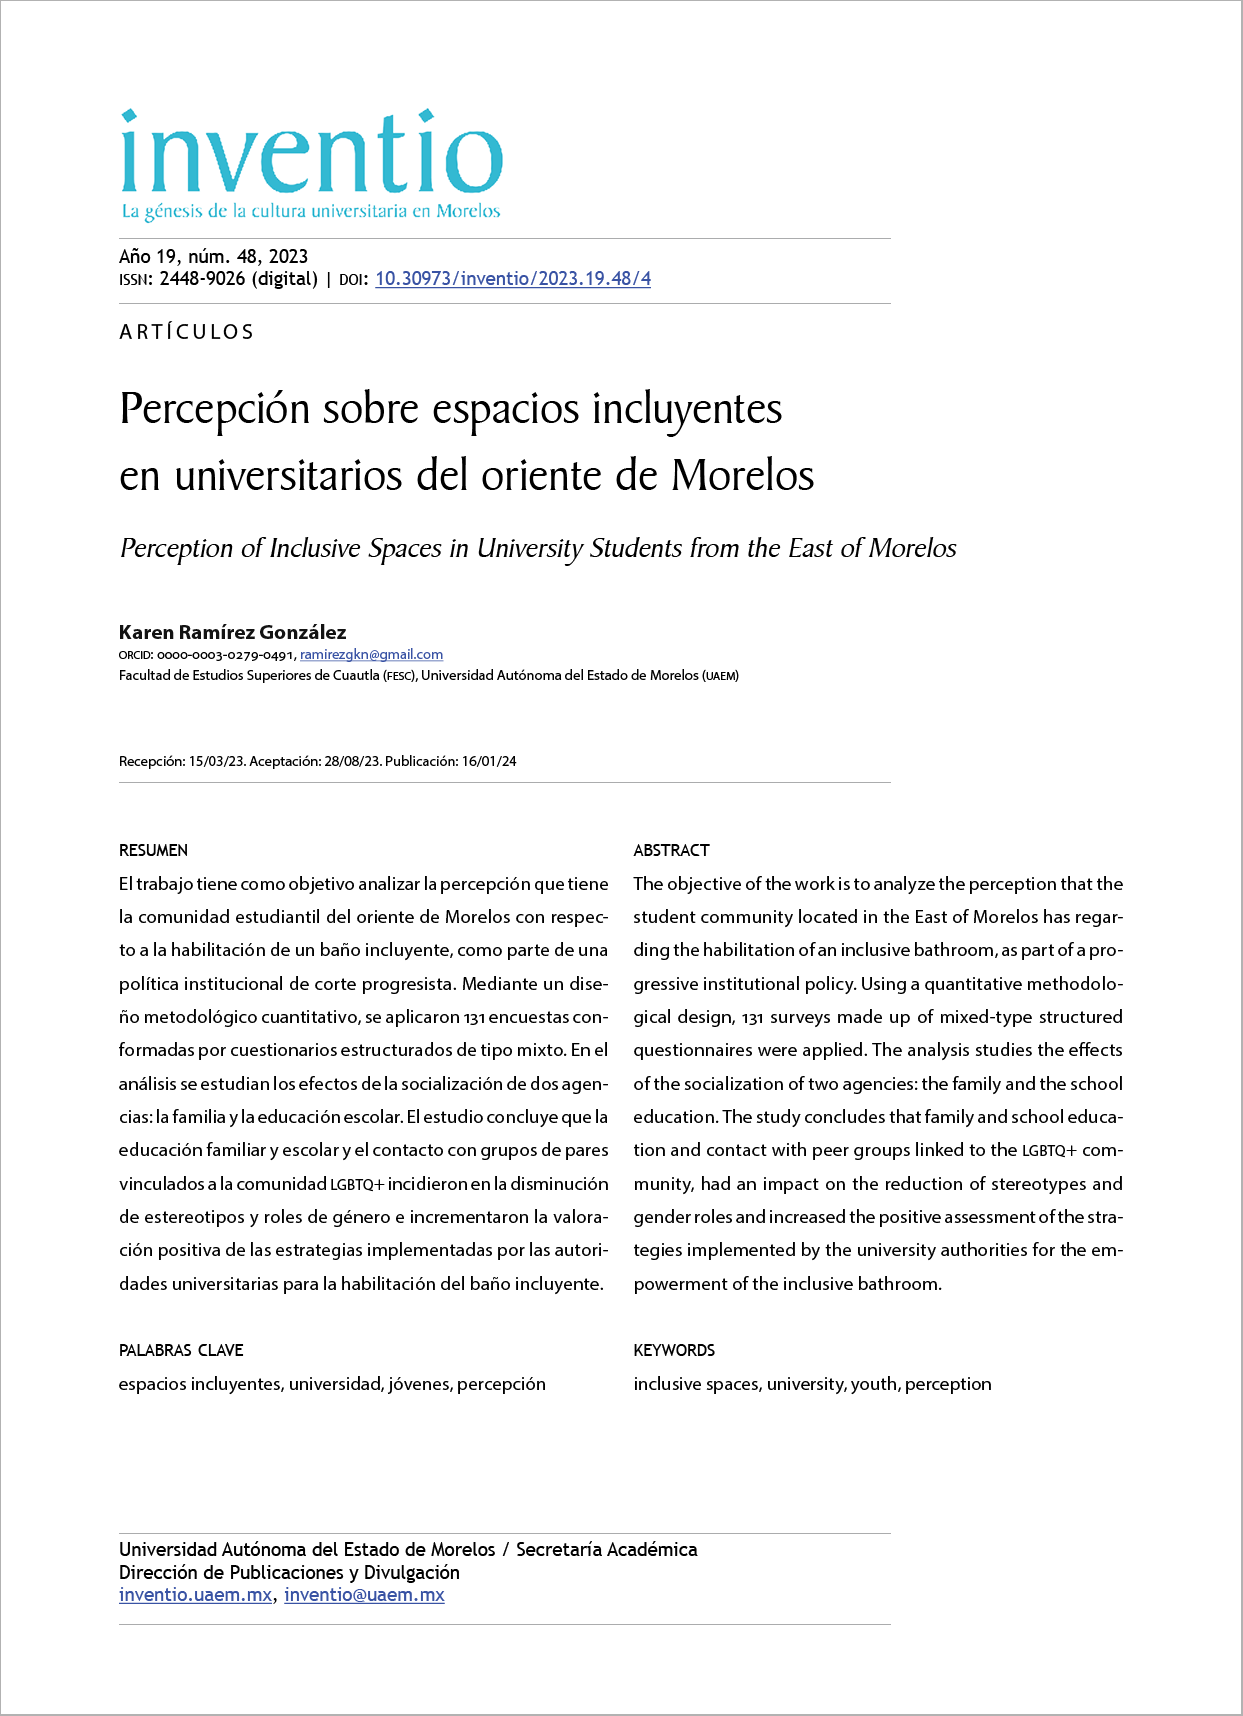 Percepción sobre espacios incluyentes en universitarios del oriente de Morelos